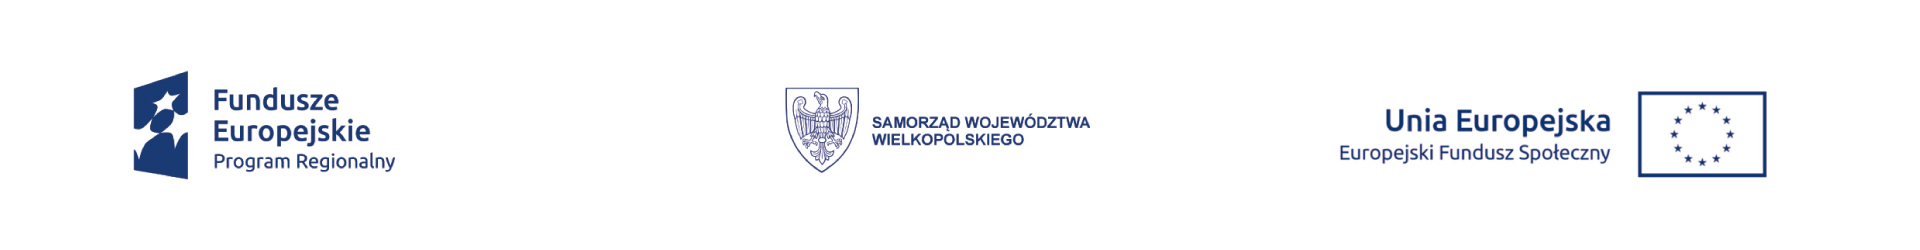 Fundusze Europejskie Program Regionalny / Samorzad Województwa Wielkopolskiego / Europejski Fundusz Społeczny